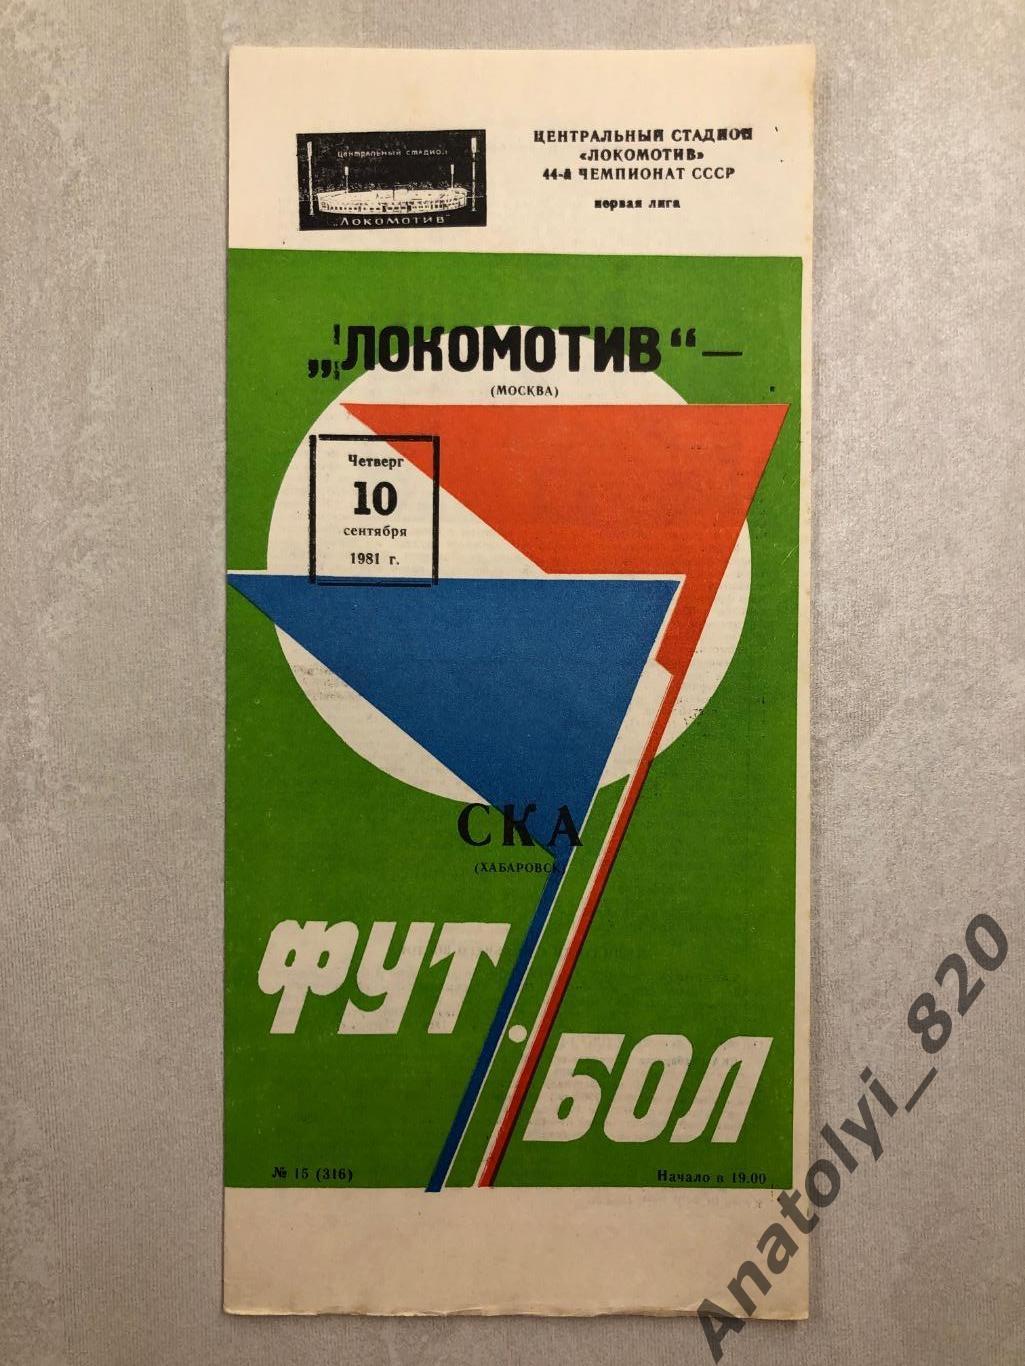 Локомотив Москва - СКА Хабаровск 1981 год